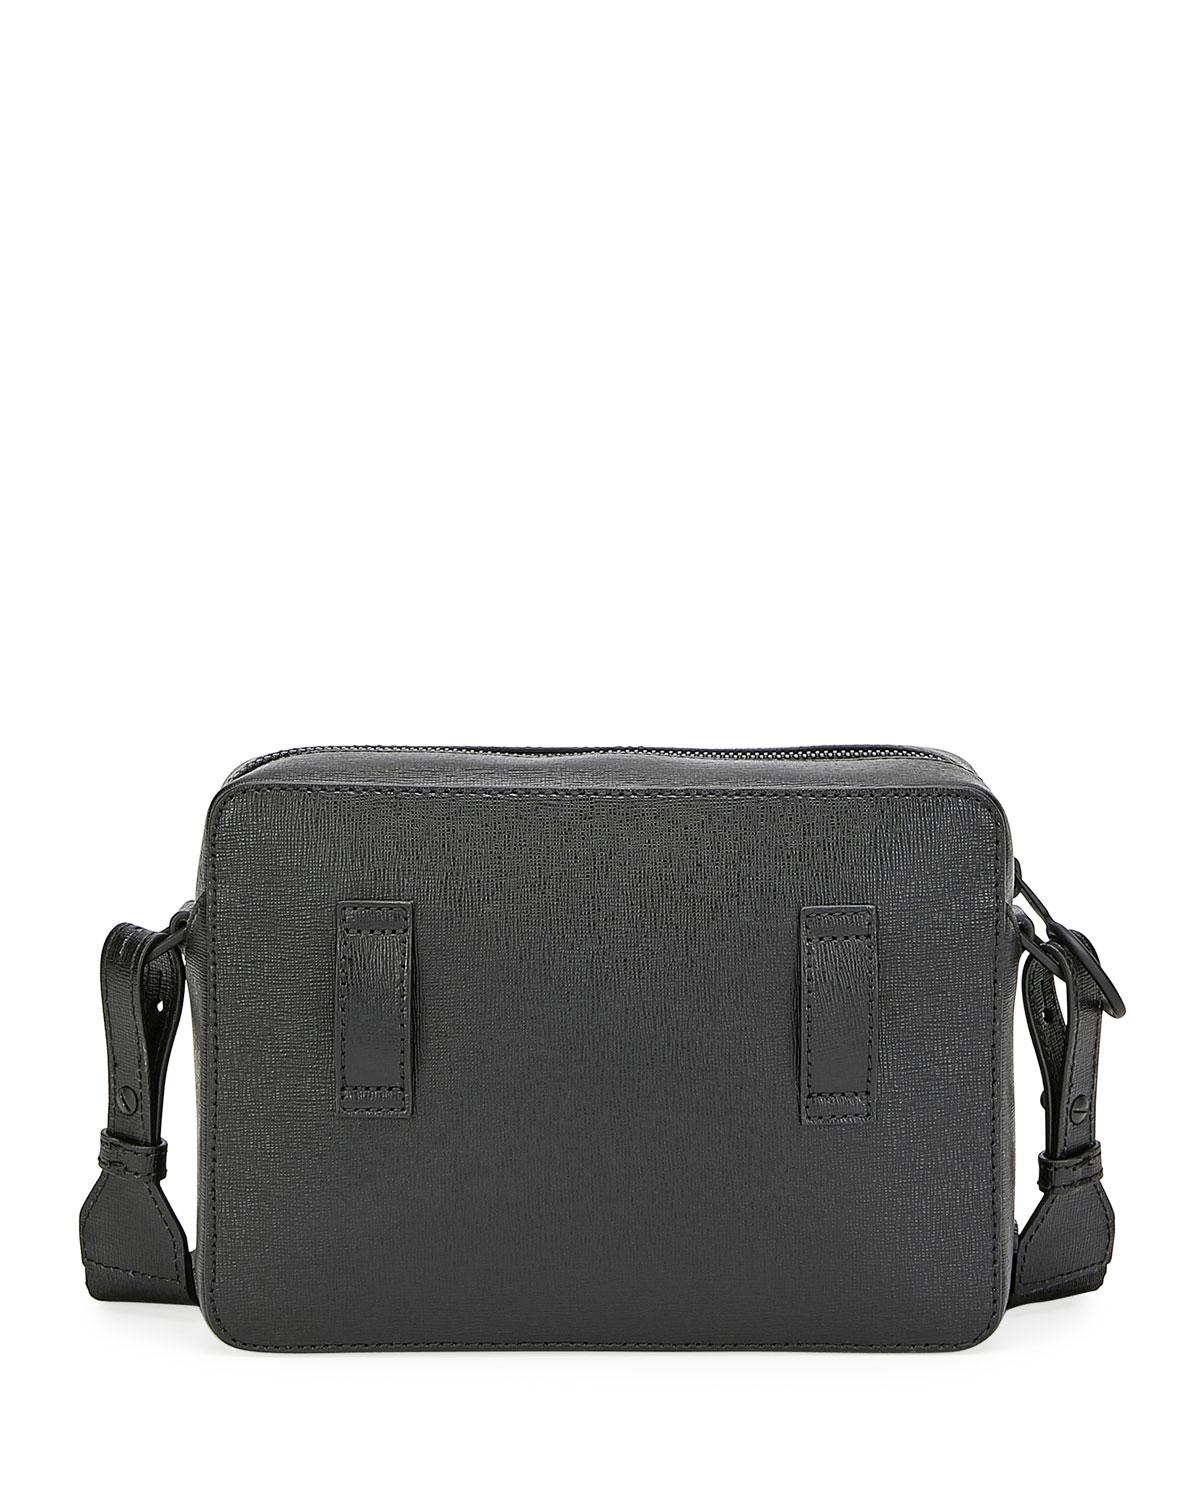 Off-White c/o Virgil Abloh Men&#39;s Web-strap Leather Camera Bag in Black for Men - Lyst